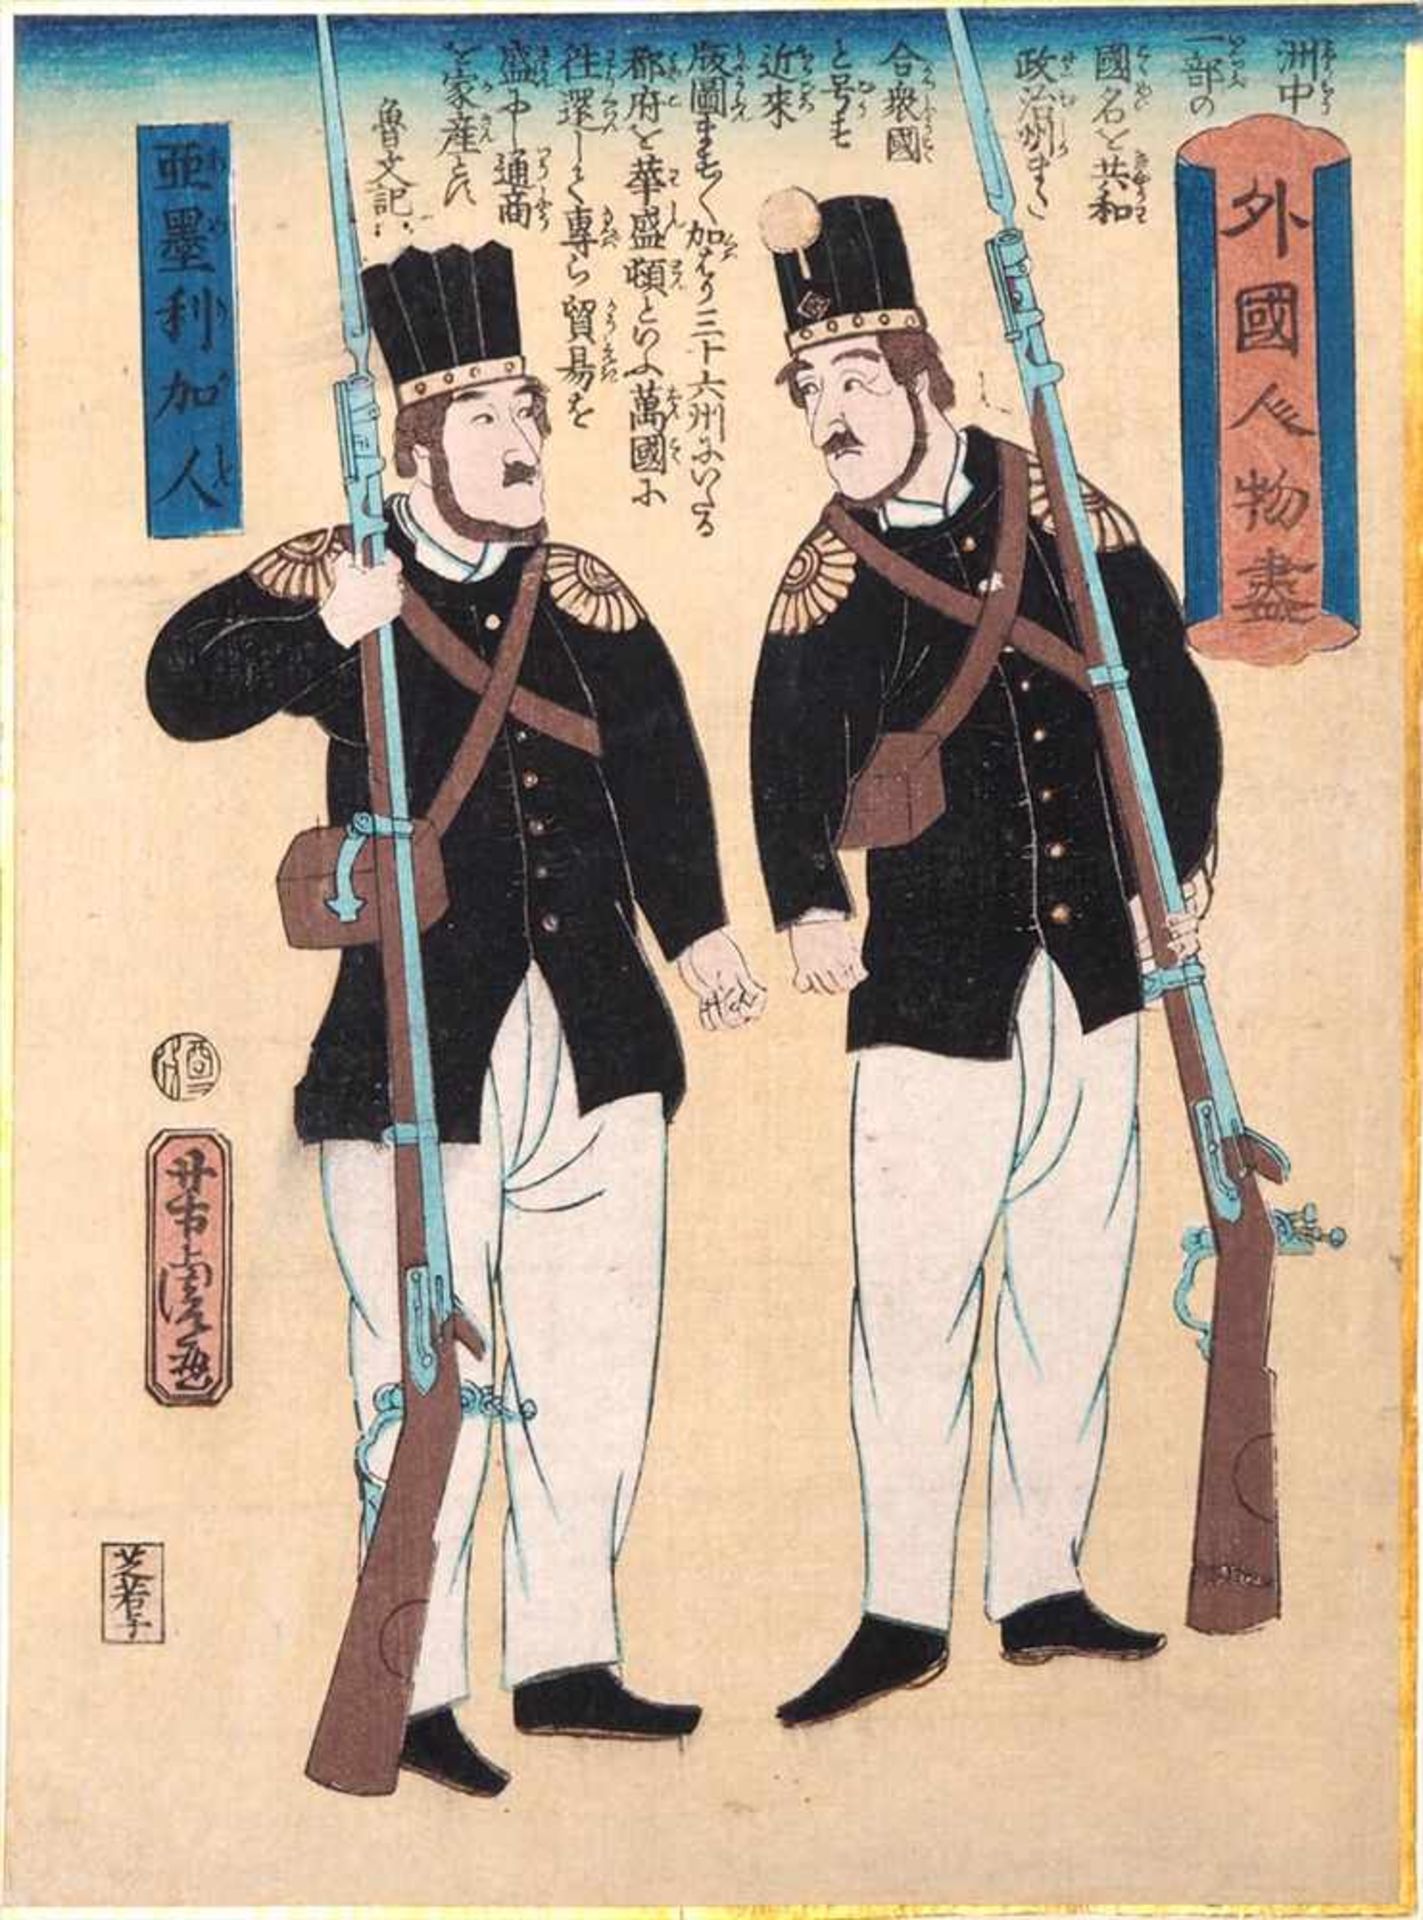 Utagawa, Yoshitora, ca. 1840 - 1880Farbholzschnitt "Zwei Amerikaner" aus der Serie "Gaikoku jimbutsu - Image 2 of 7